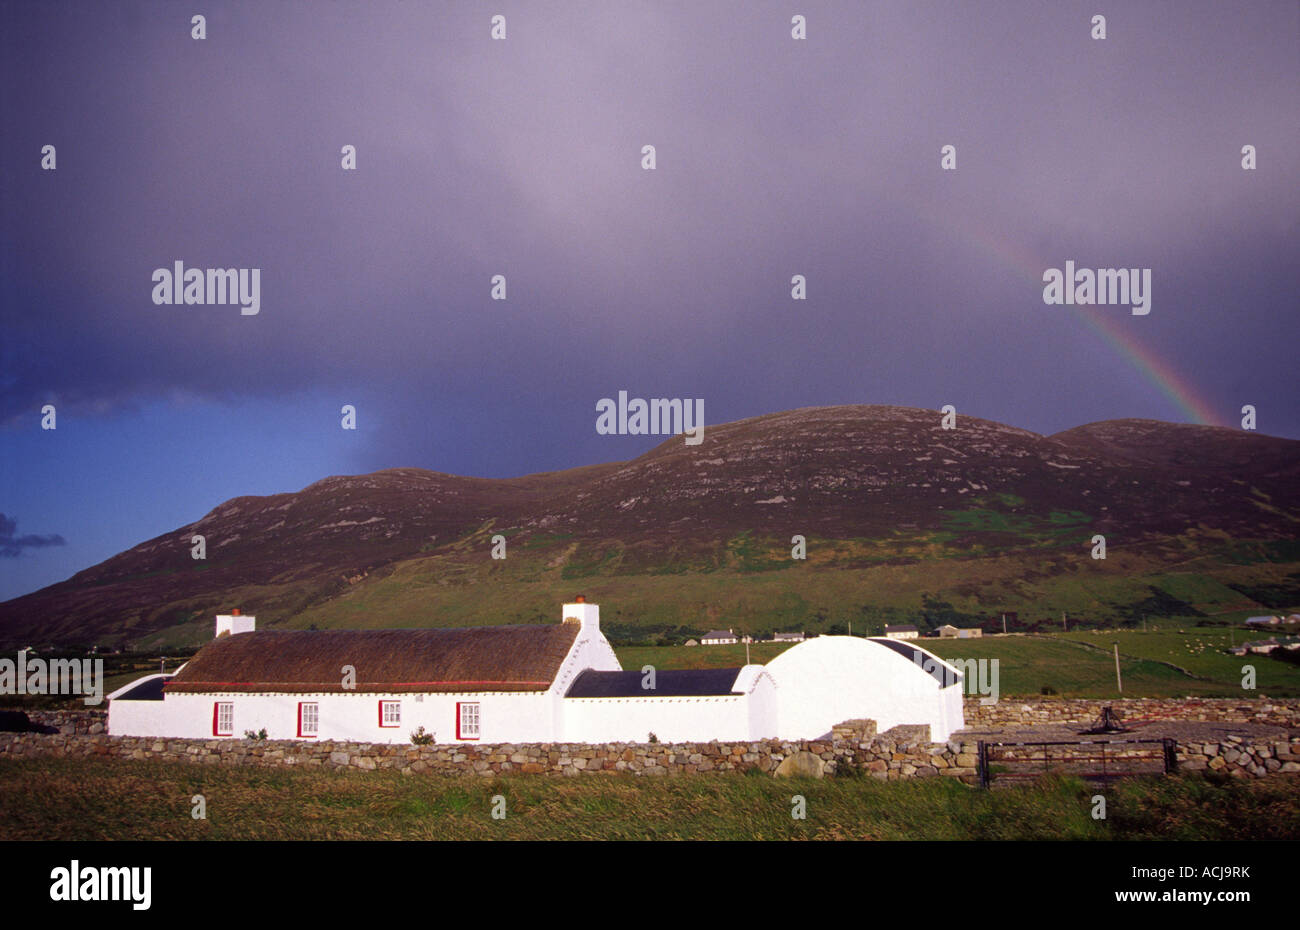 Chaumière traditionnelle et arc-en-ciel, péninsule d'Inishowen, comté de Donegal, Irlande. Banque D'Images